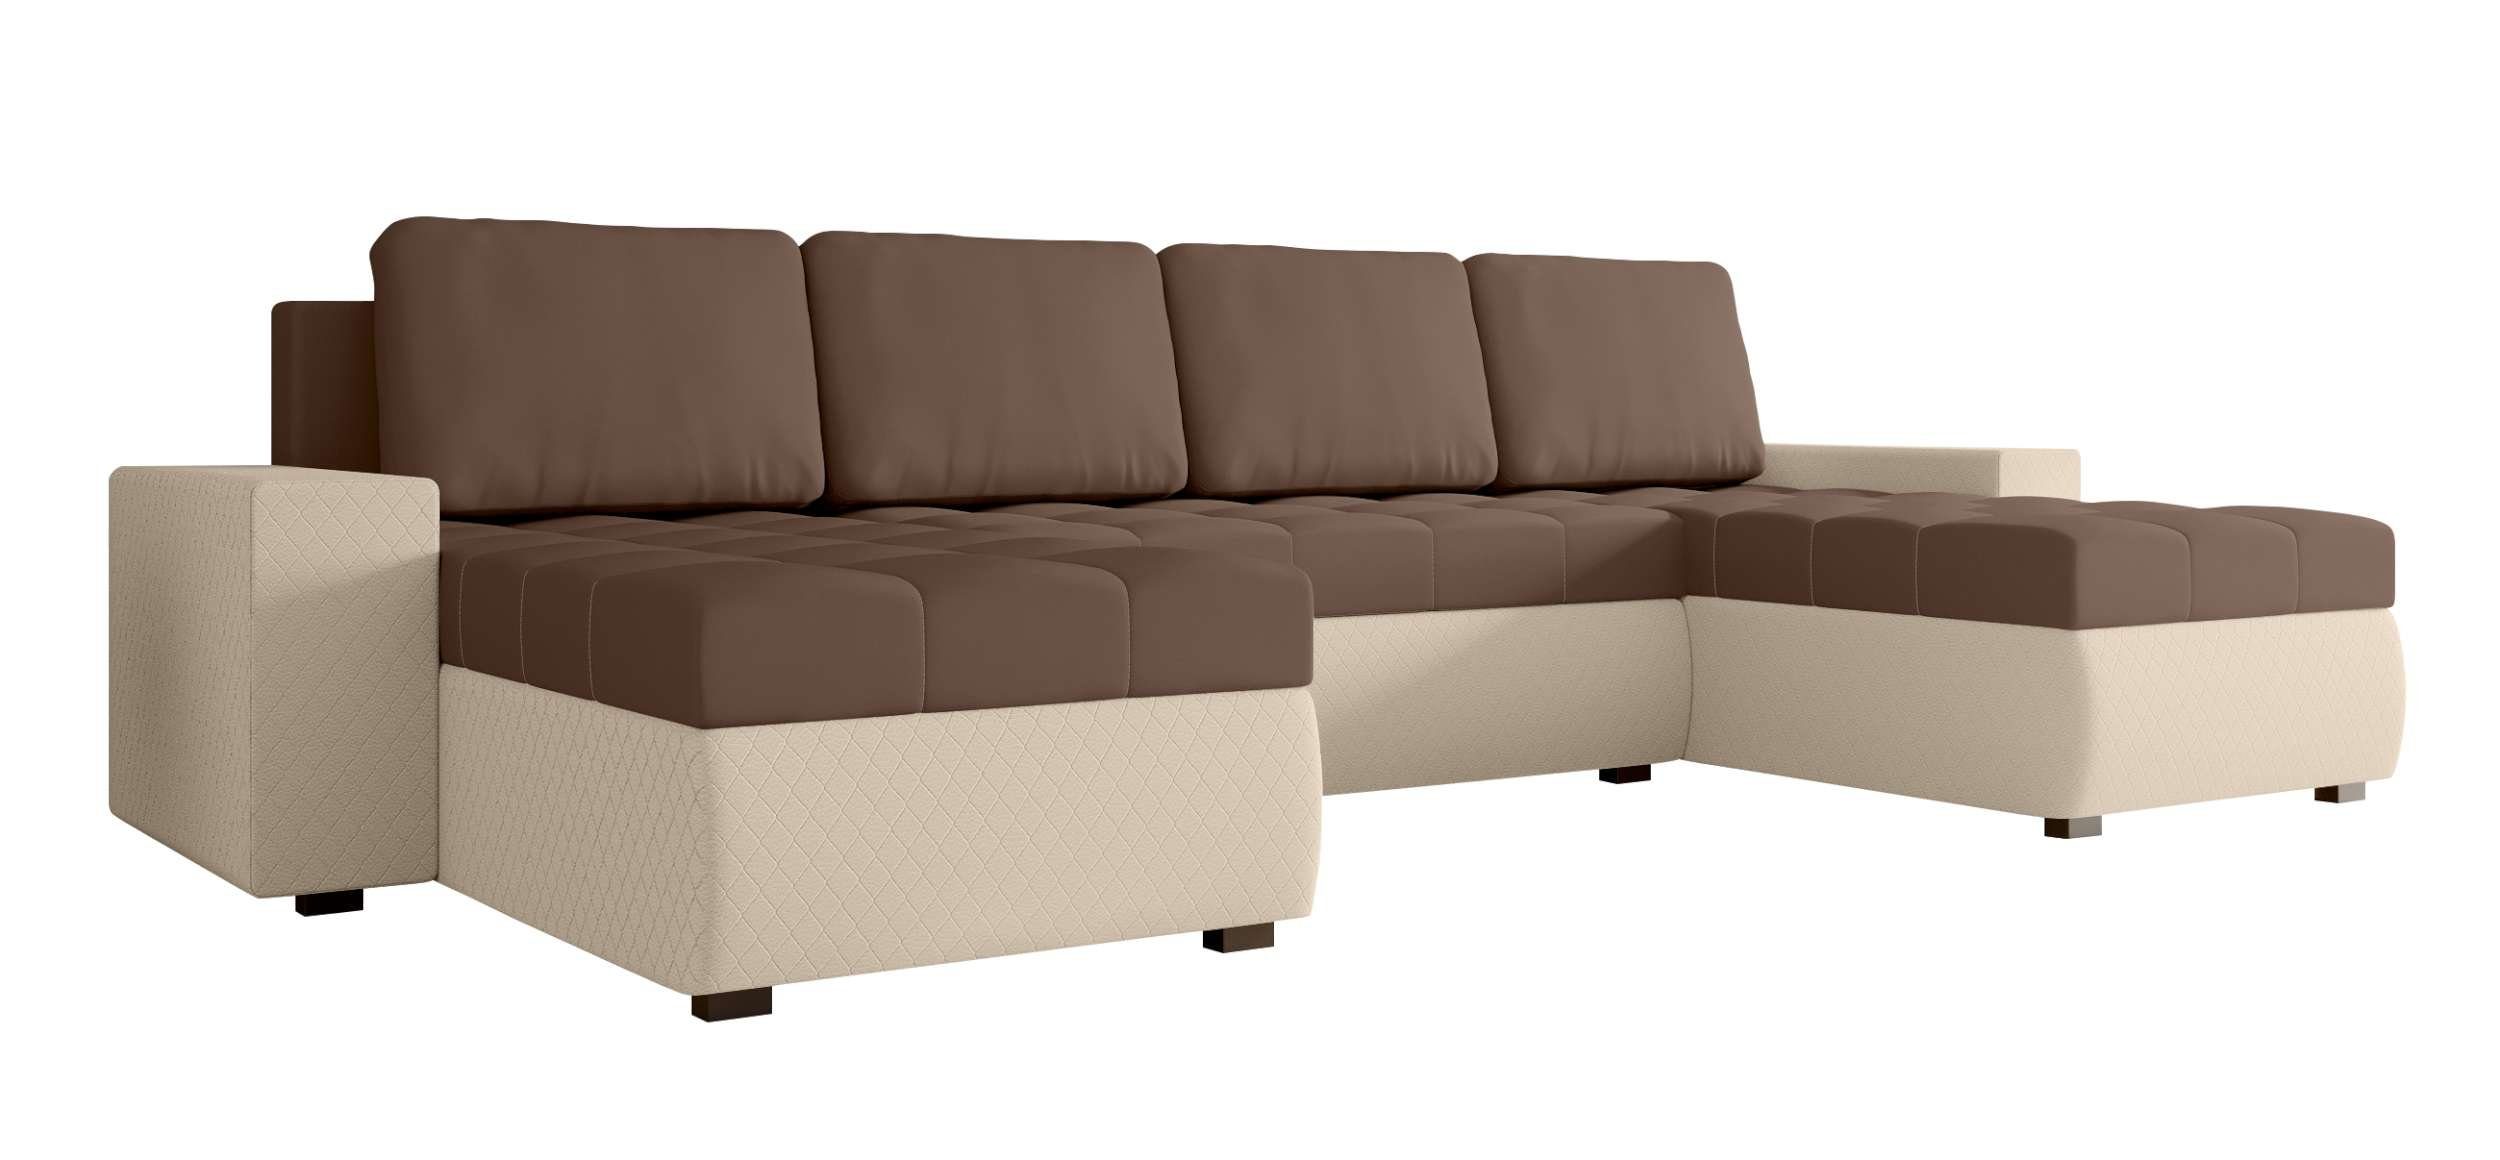 Sofa, Bettfunktion, Amelia, mit Wohnlandschaft Bettkasten, Modern Stylefy Design Eckcouch, Sitzkomfort, mit U-Form,